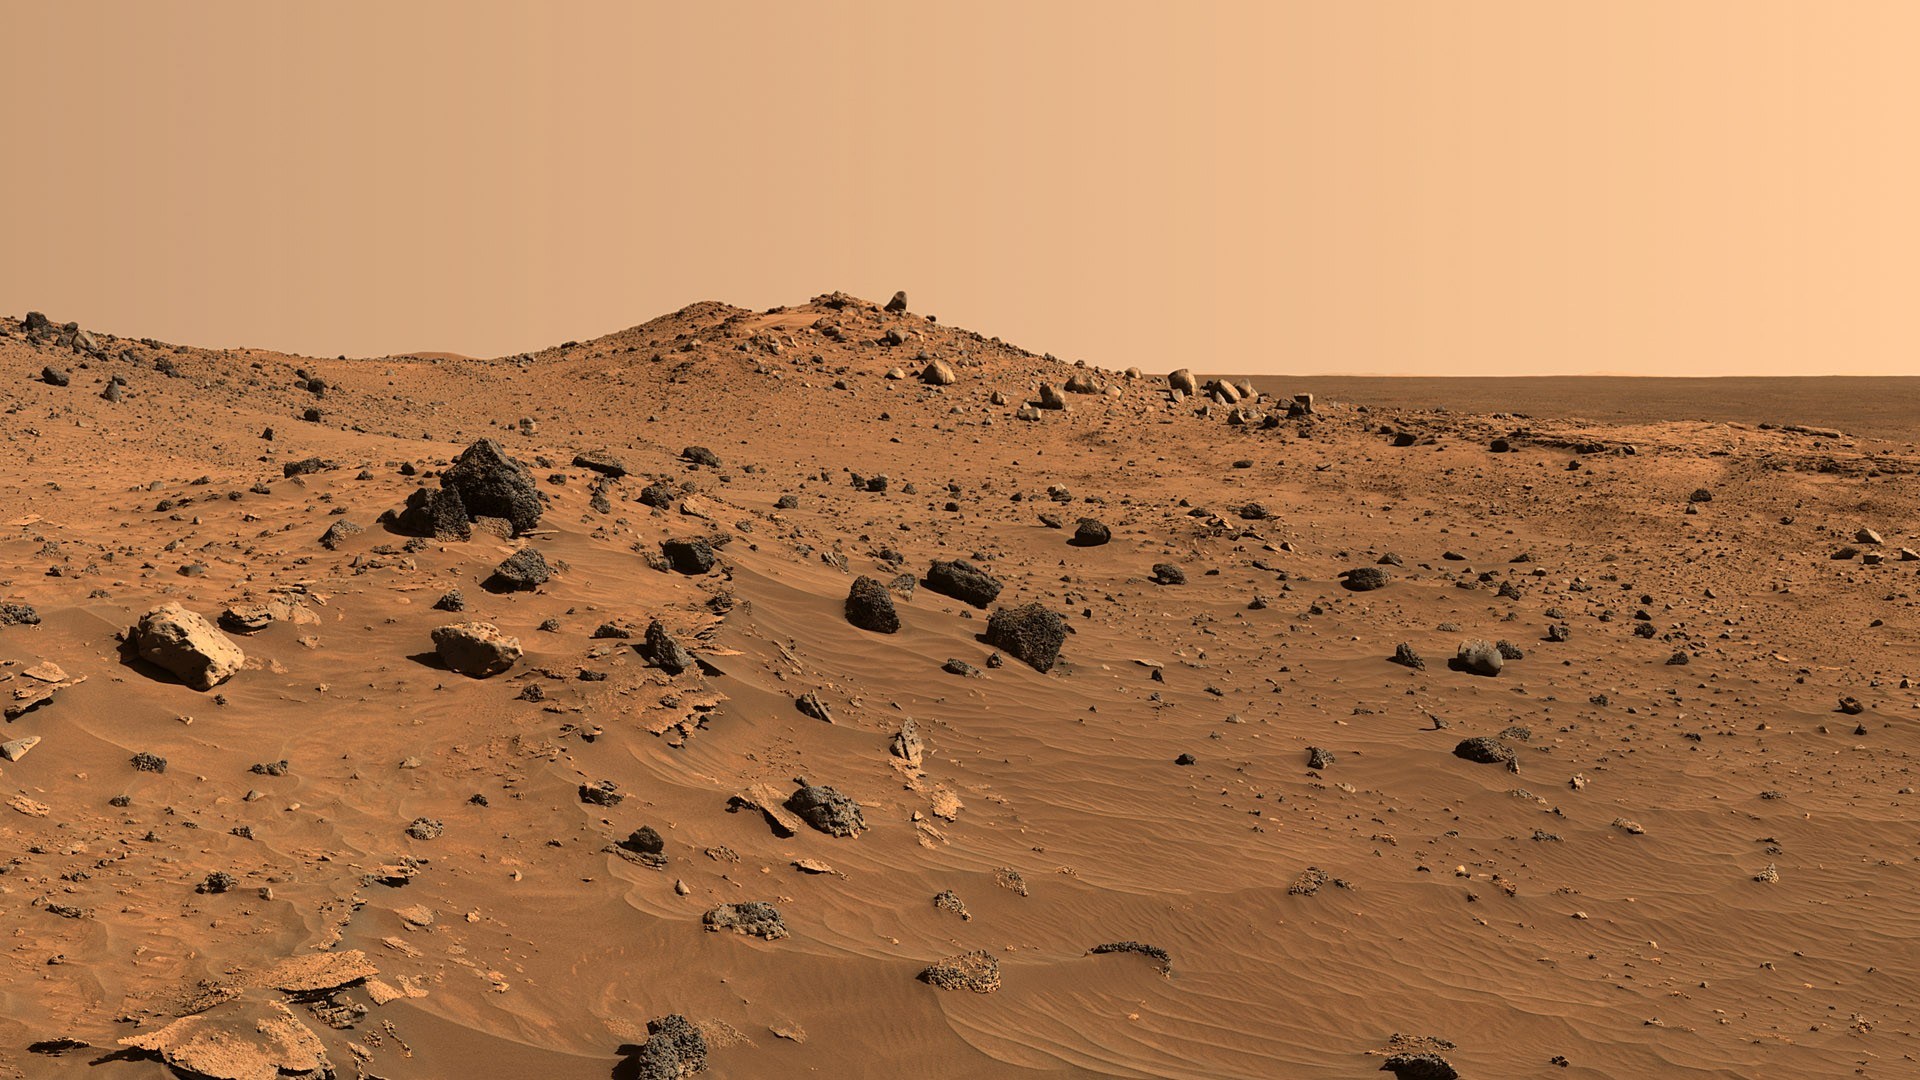 Suprafaţa planetei Marte este mult mai mortală decât s-a crezut anterior